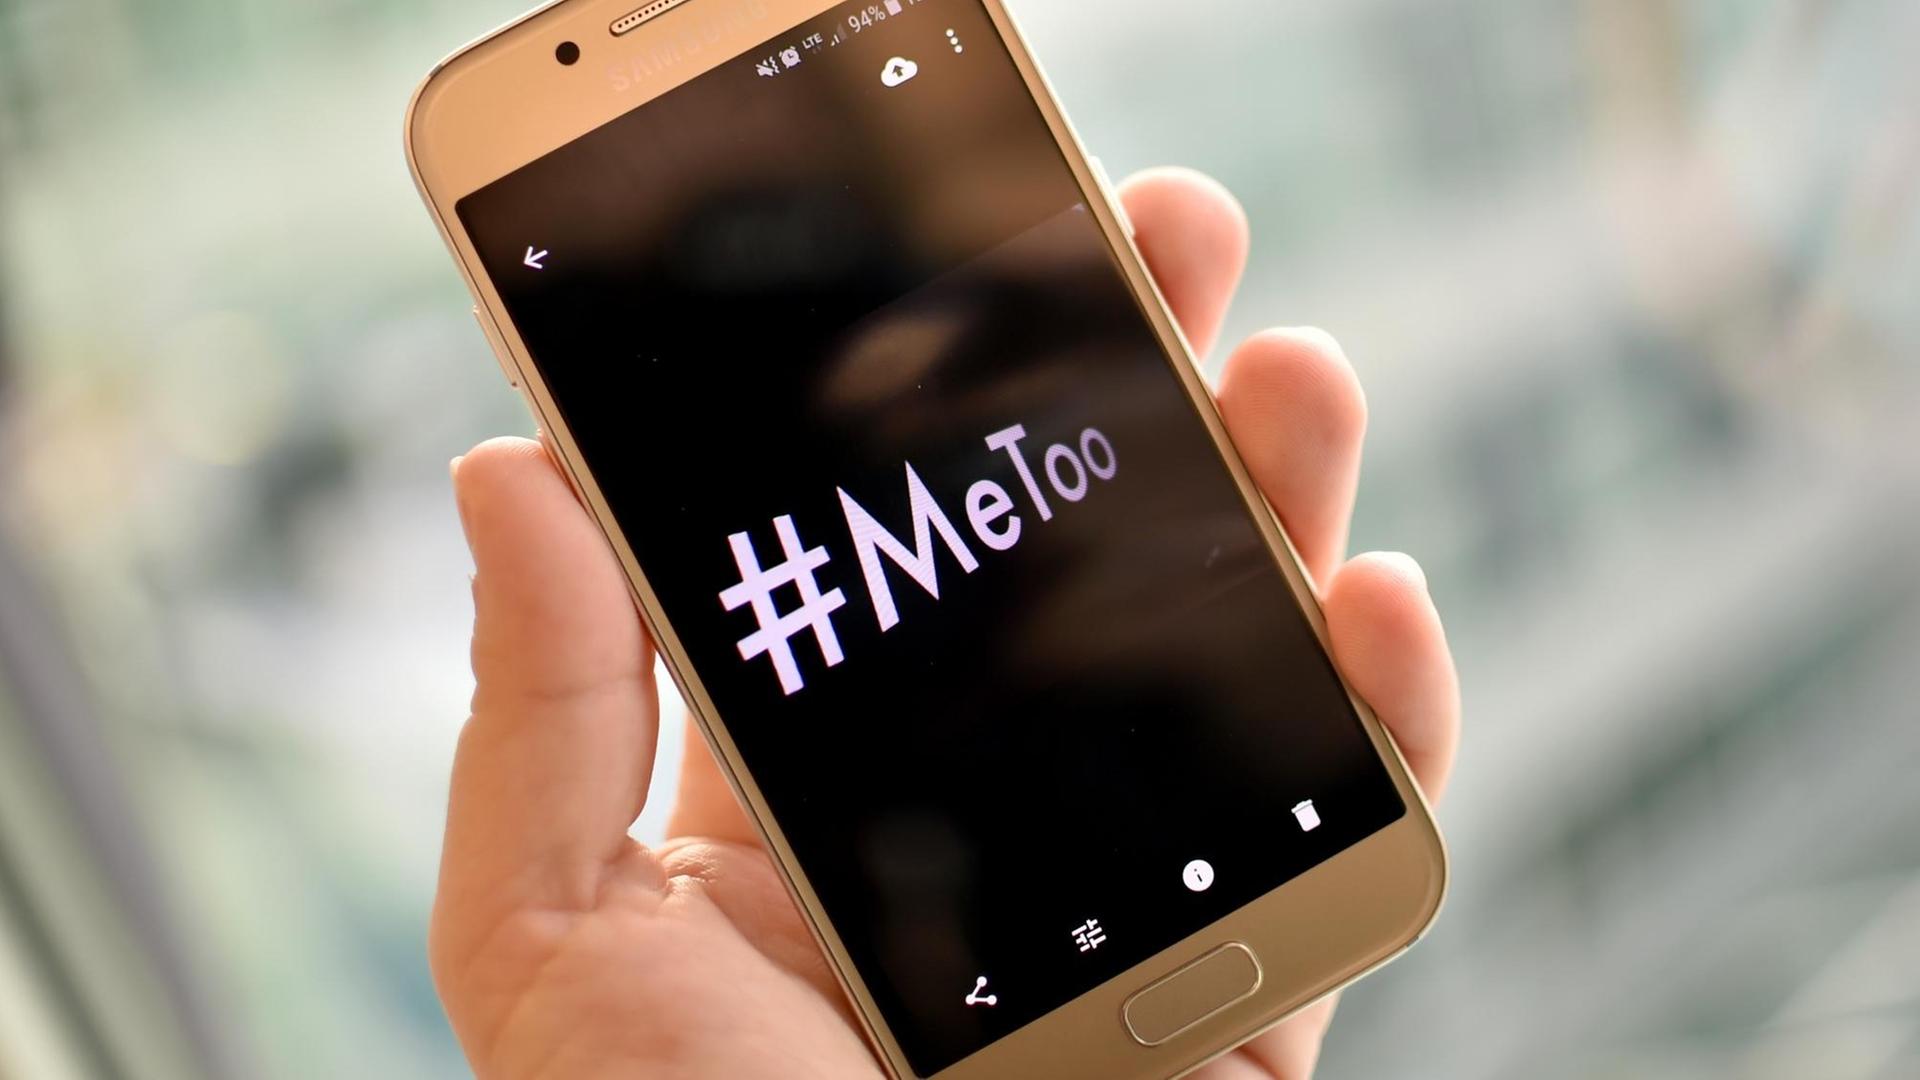 Eine junge Frau hält ein Smartphone mit dem Hashtag "#MeToo" in der Hand